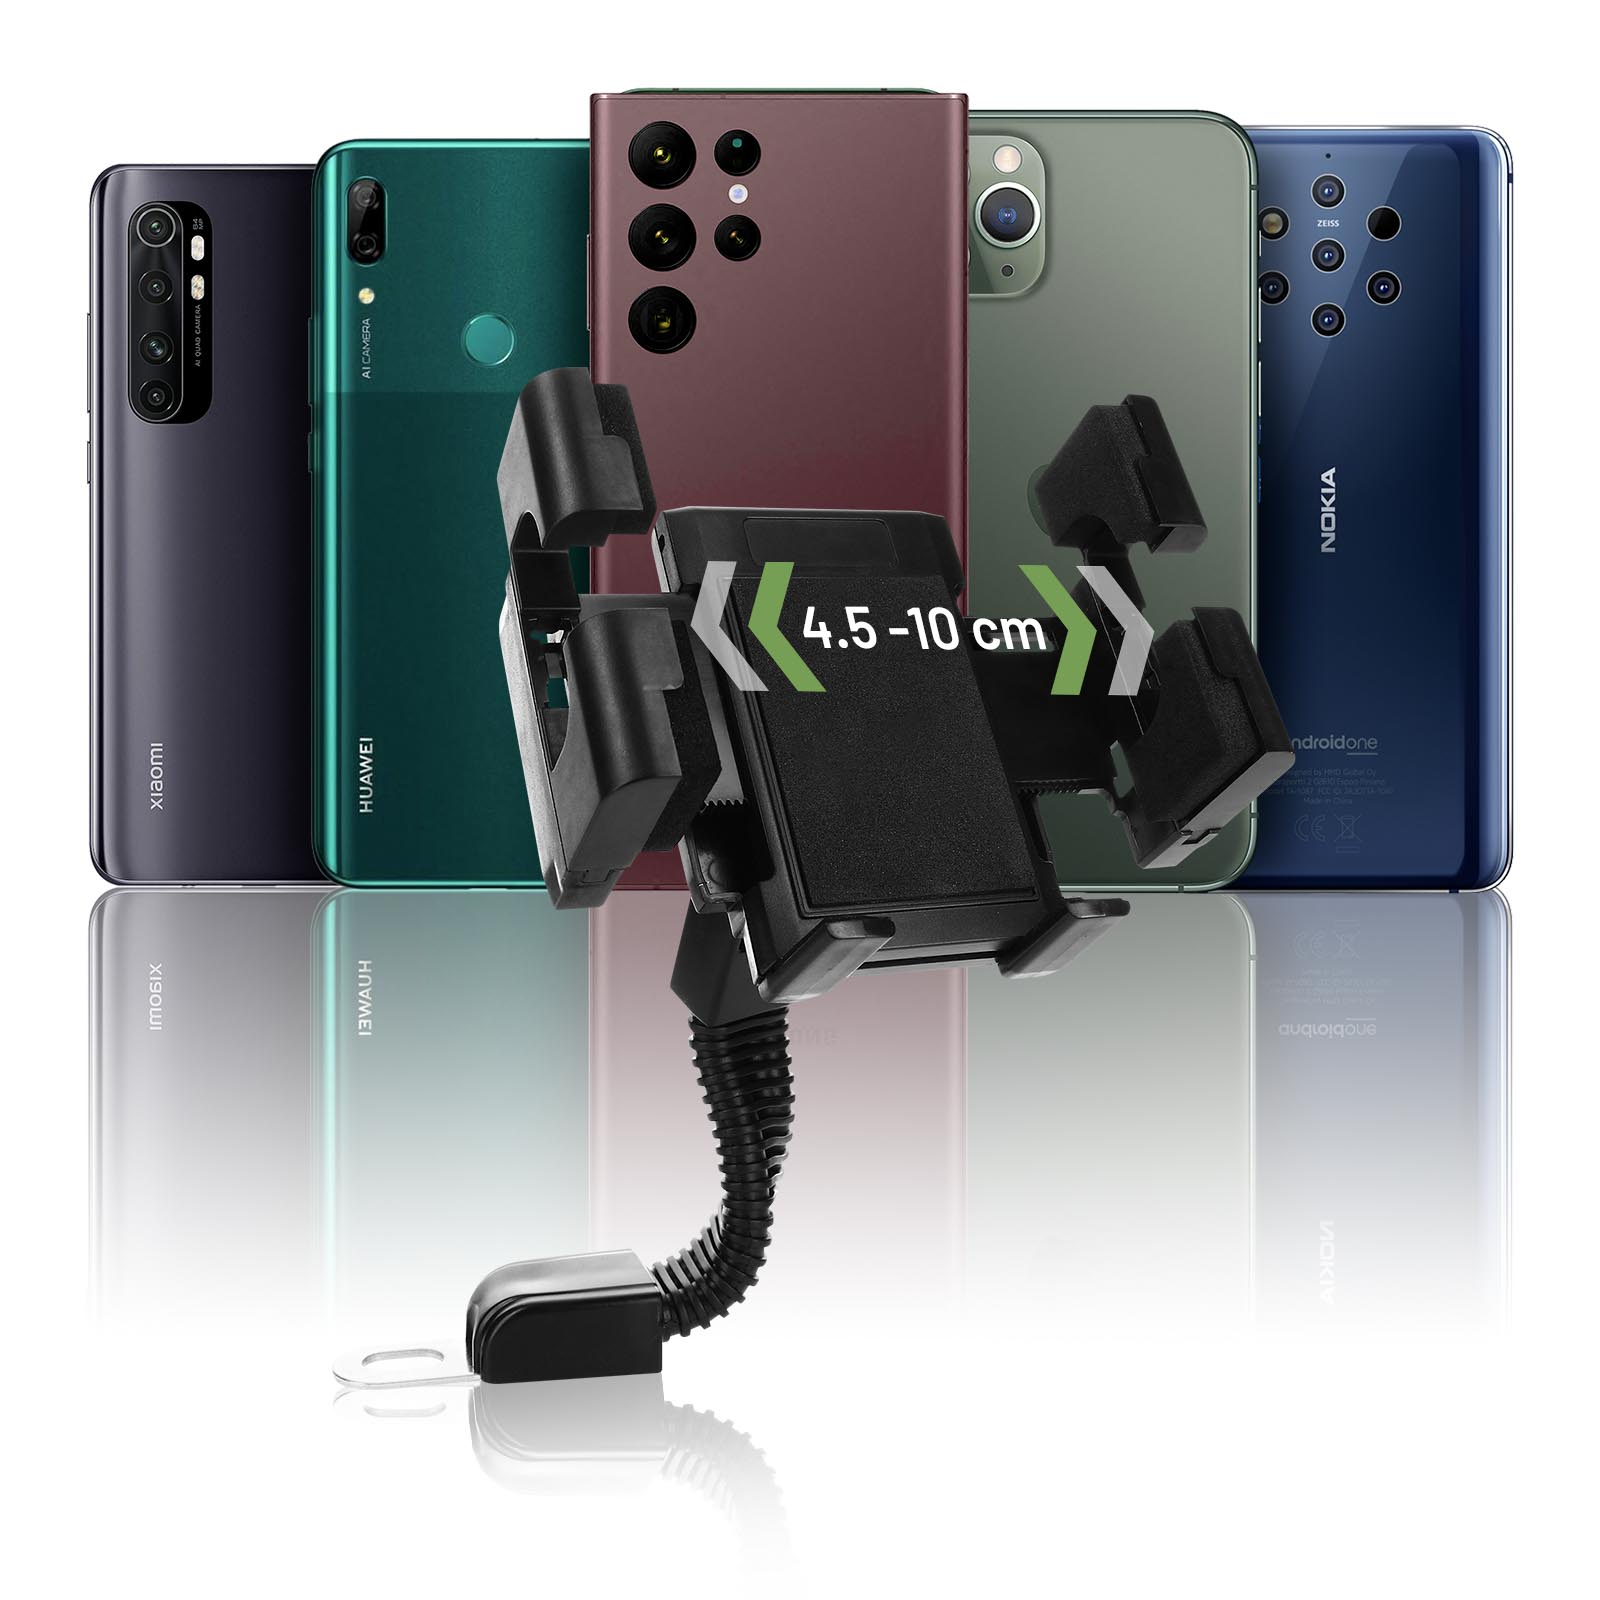 Wasserdicht Motorrad Motorrad Telefon Halter Handy Halterung für Roller  Rückspiegel Stehen für iPhone Xiaomi